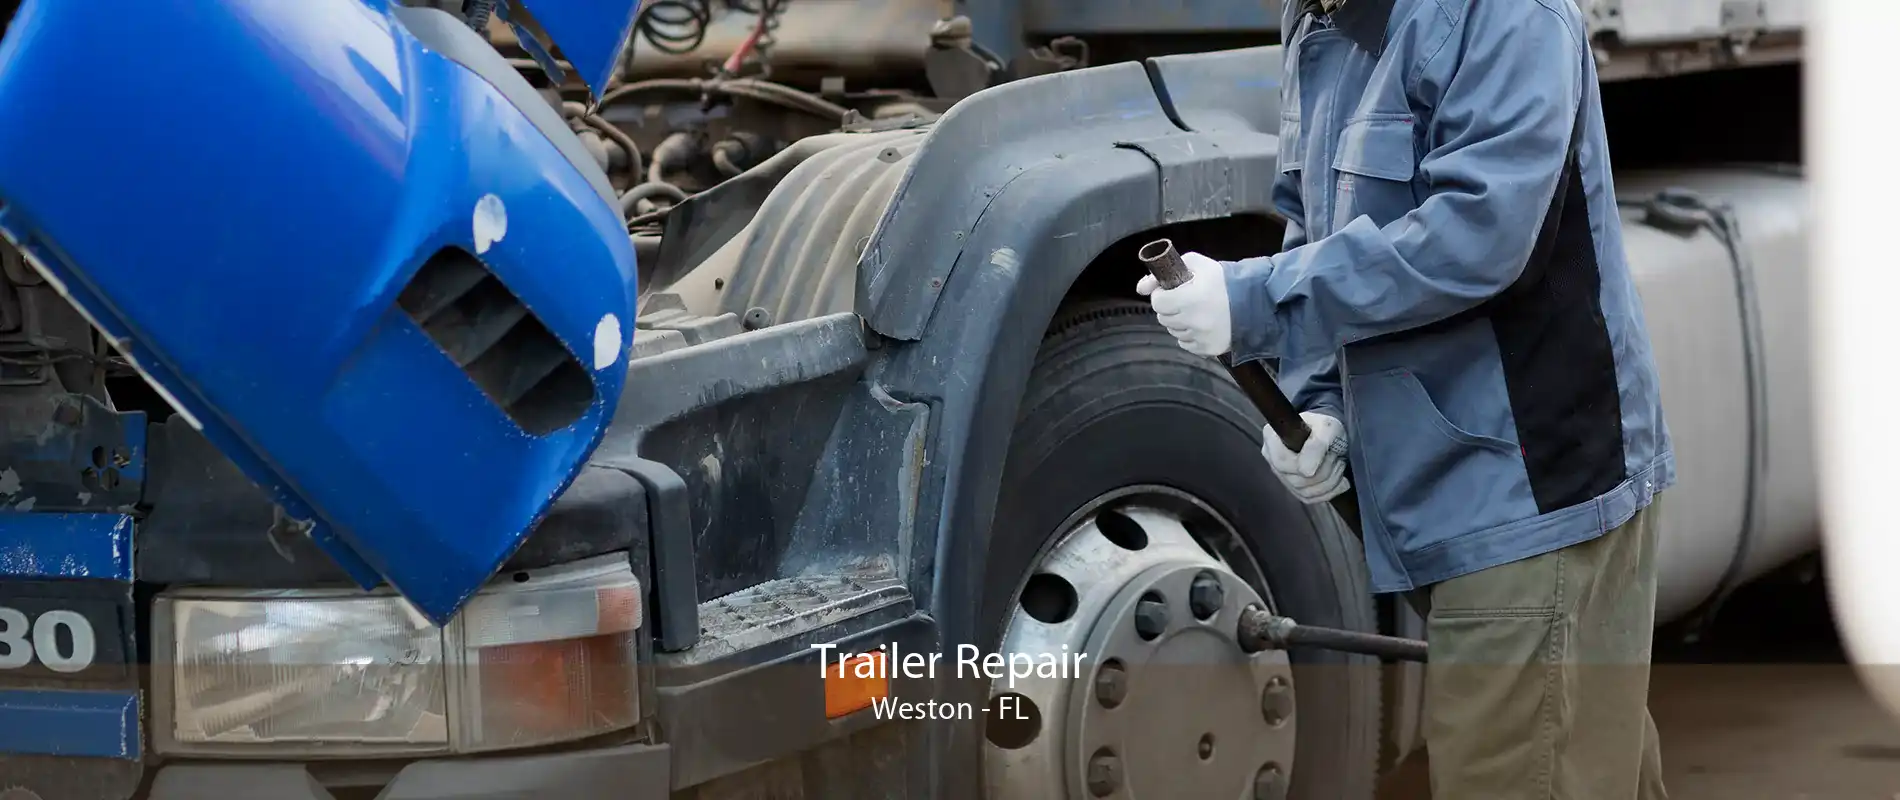 Trailer Repair Weston - FL